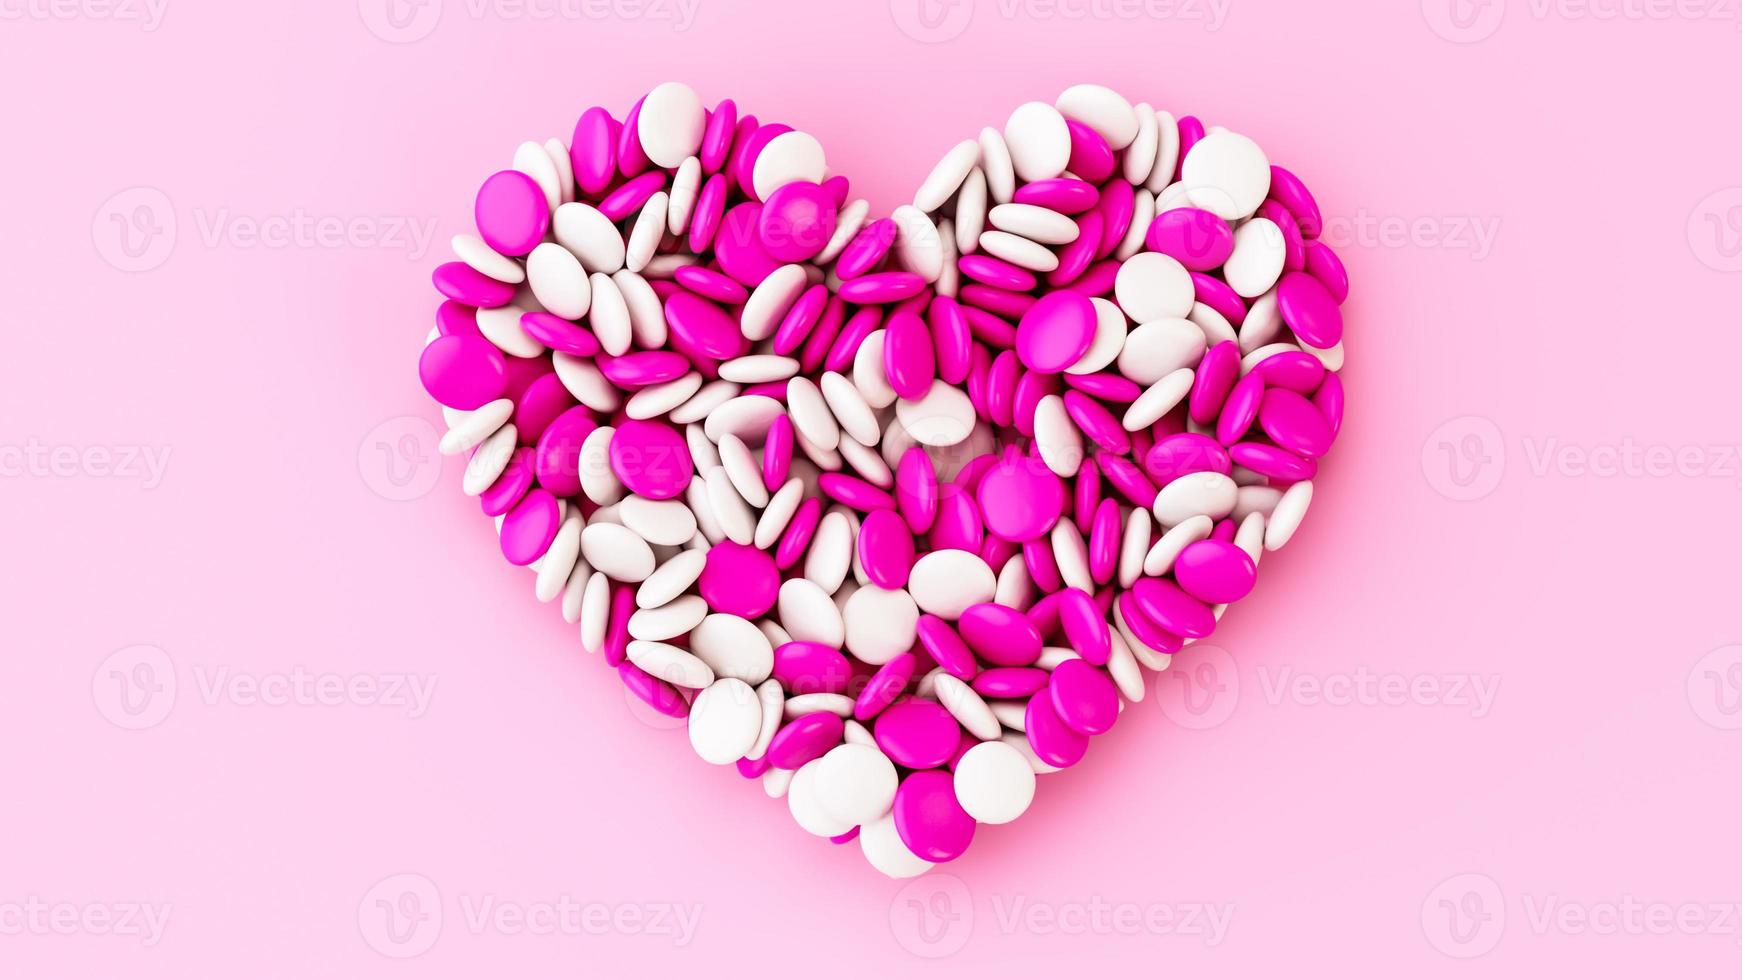 kleurrijke chocolade knop snoep chocolade gecoate bonen hartvormig op roze achtergrond valentijn verjaardag verjaardag bruiloft liefde concept foto